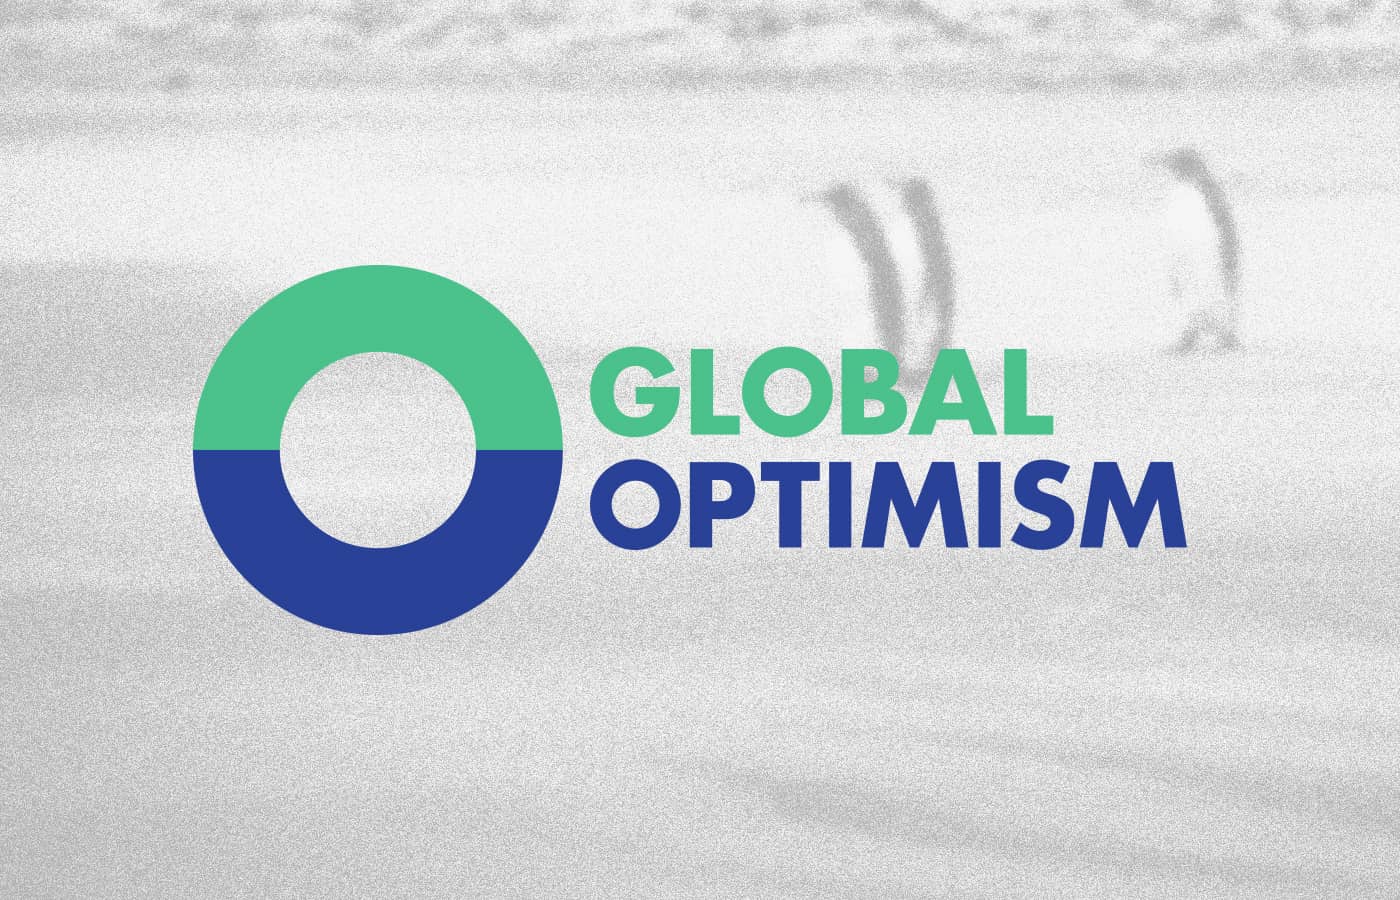 Global Optimism logo on grainy background